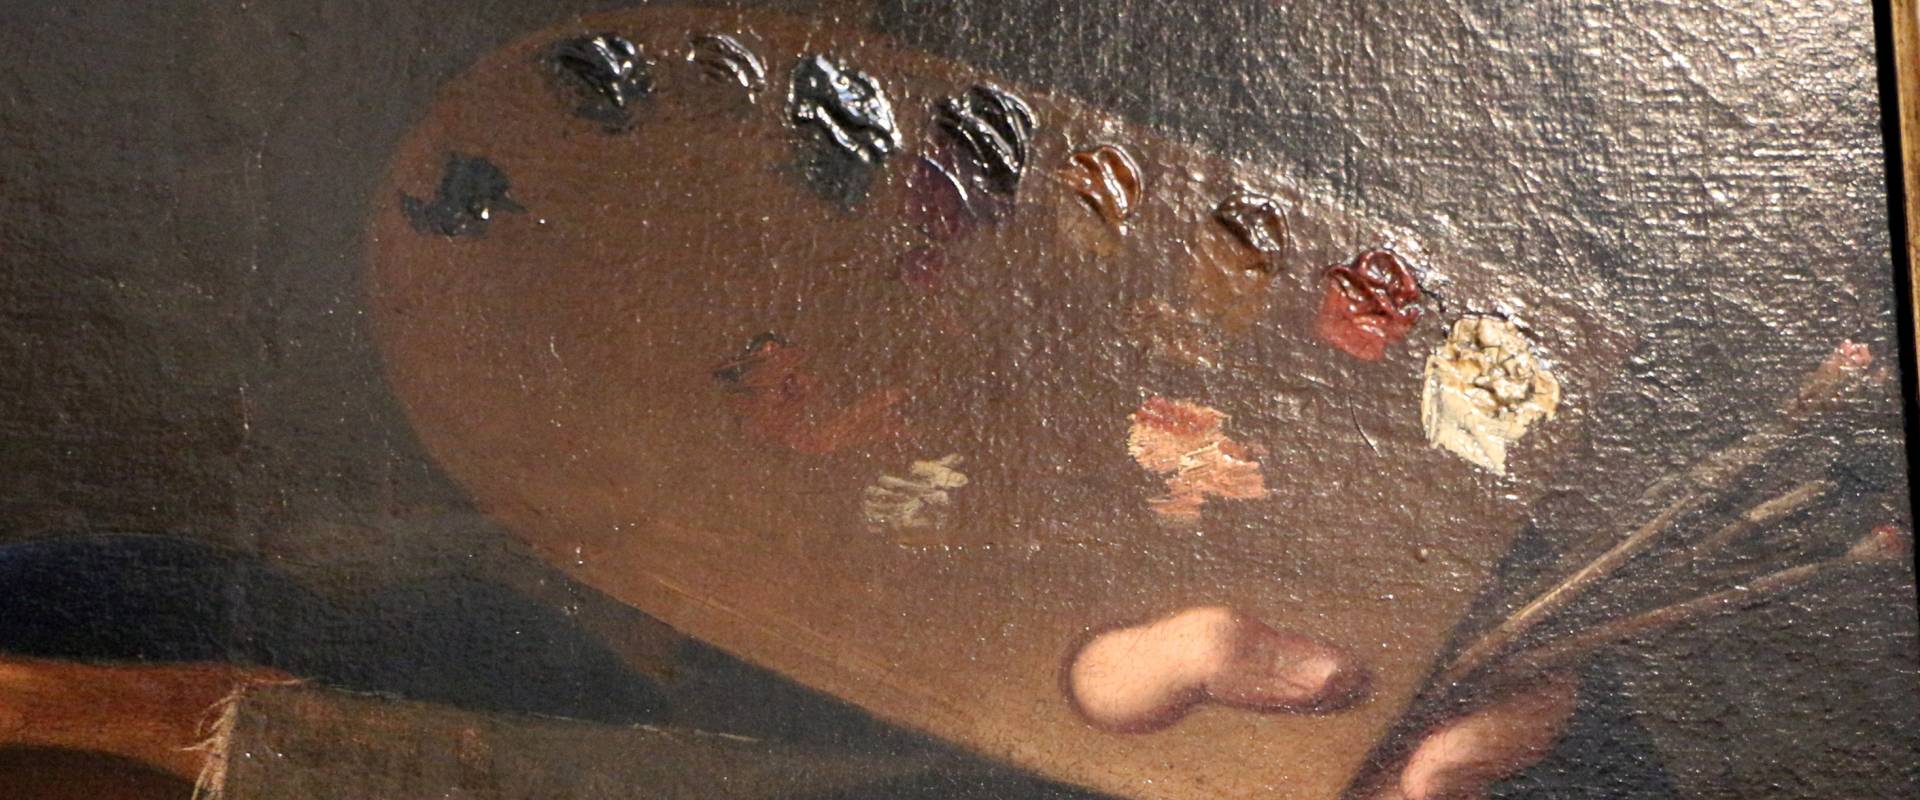 Gian domenico cerrini, la pittura regge l'autoritratto del pittore, 1650 ca., 02 tavolozza photo by Sailko